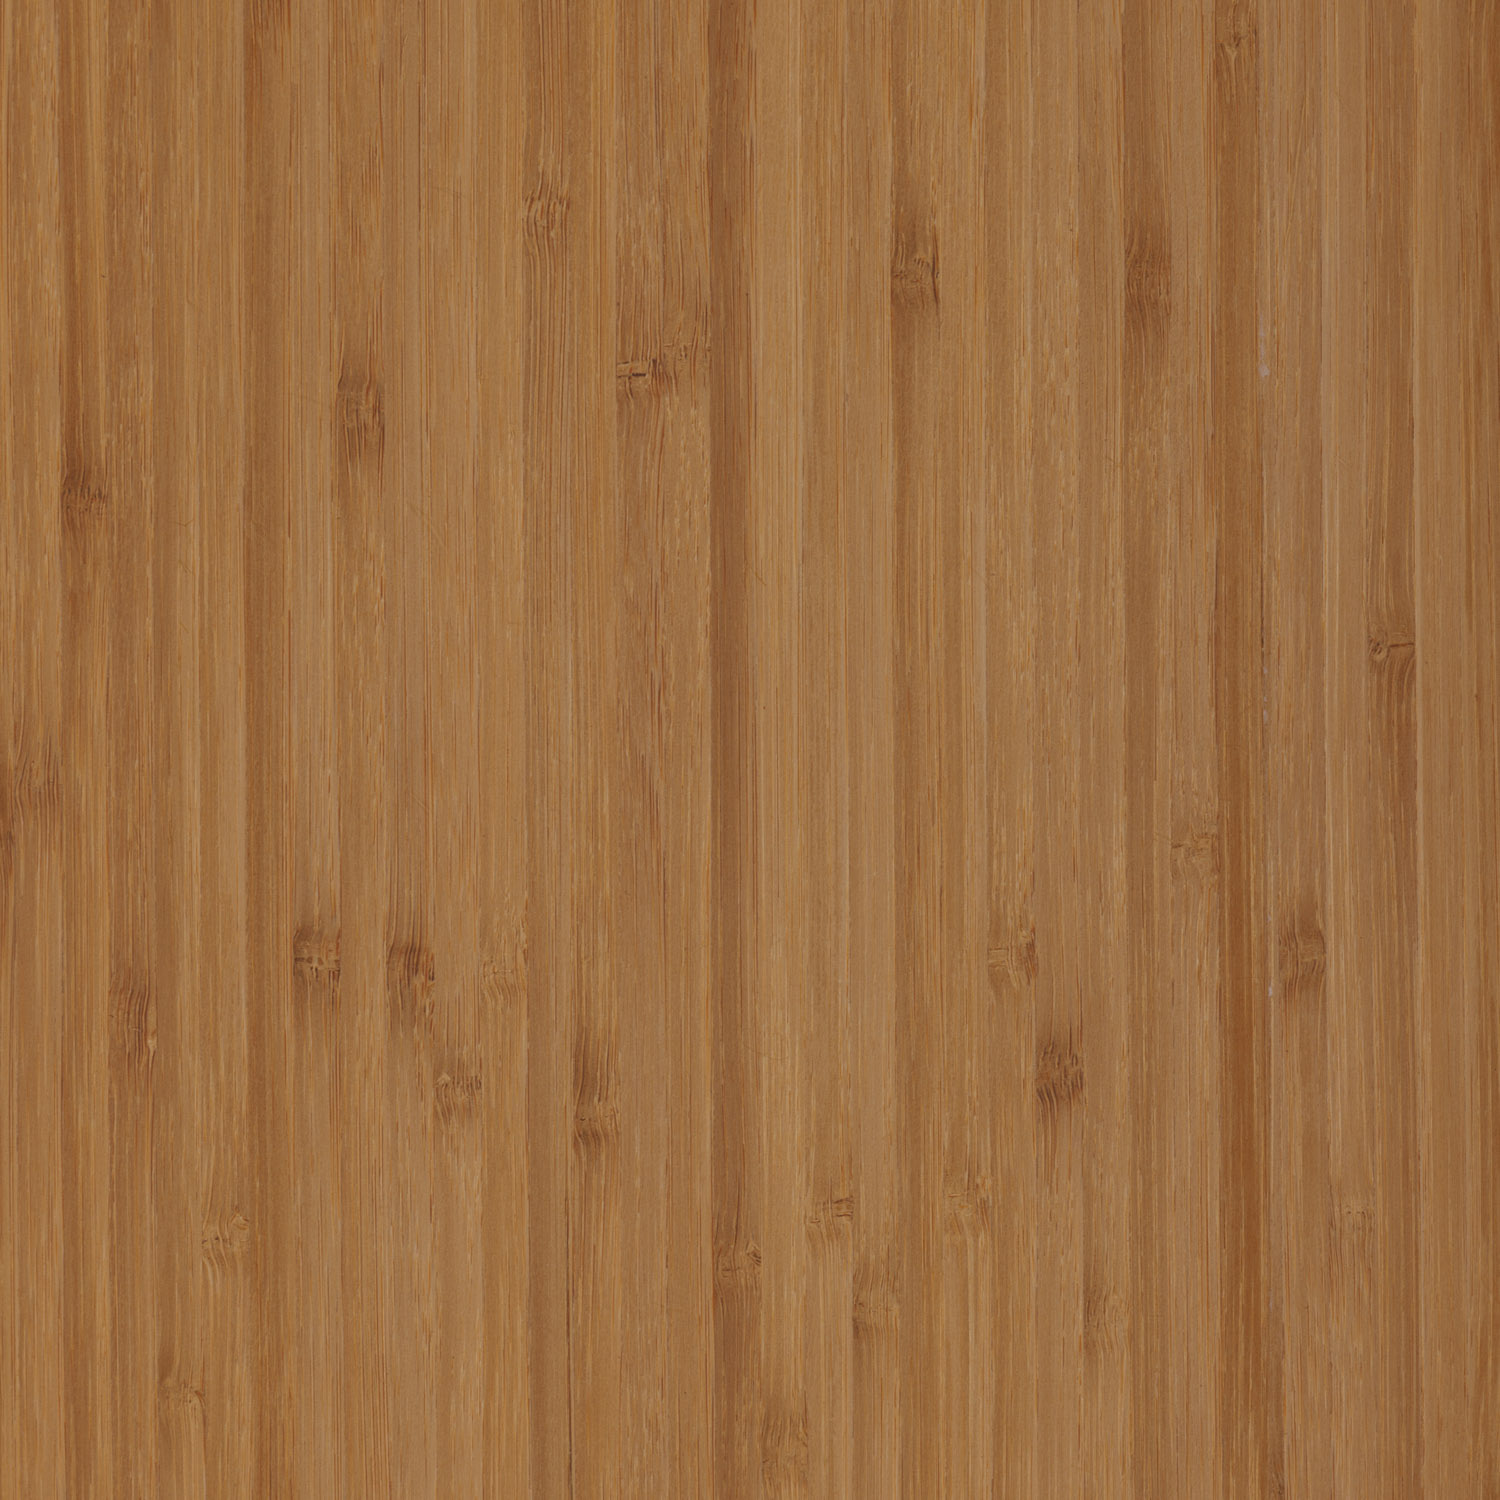 caramel bamboo natural wood veneer panel